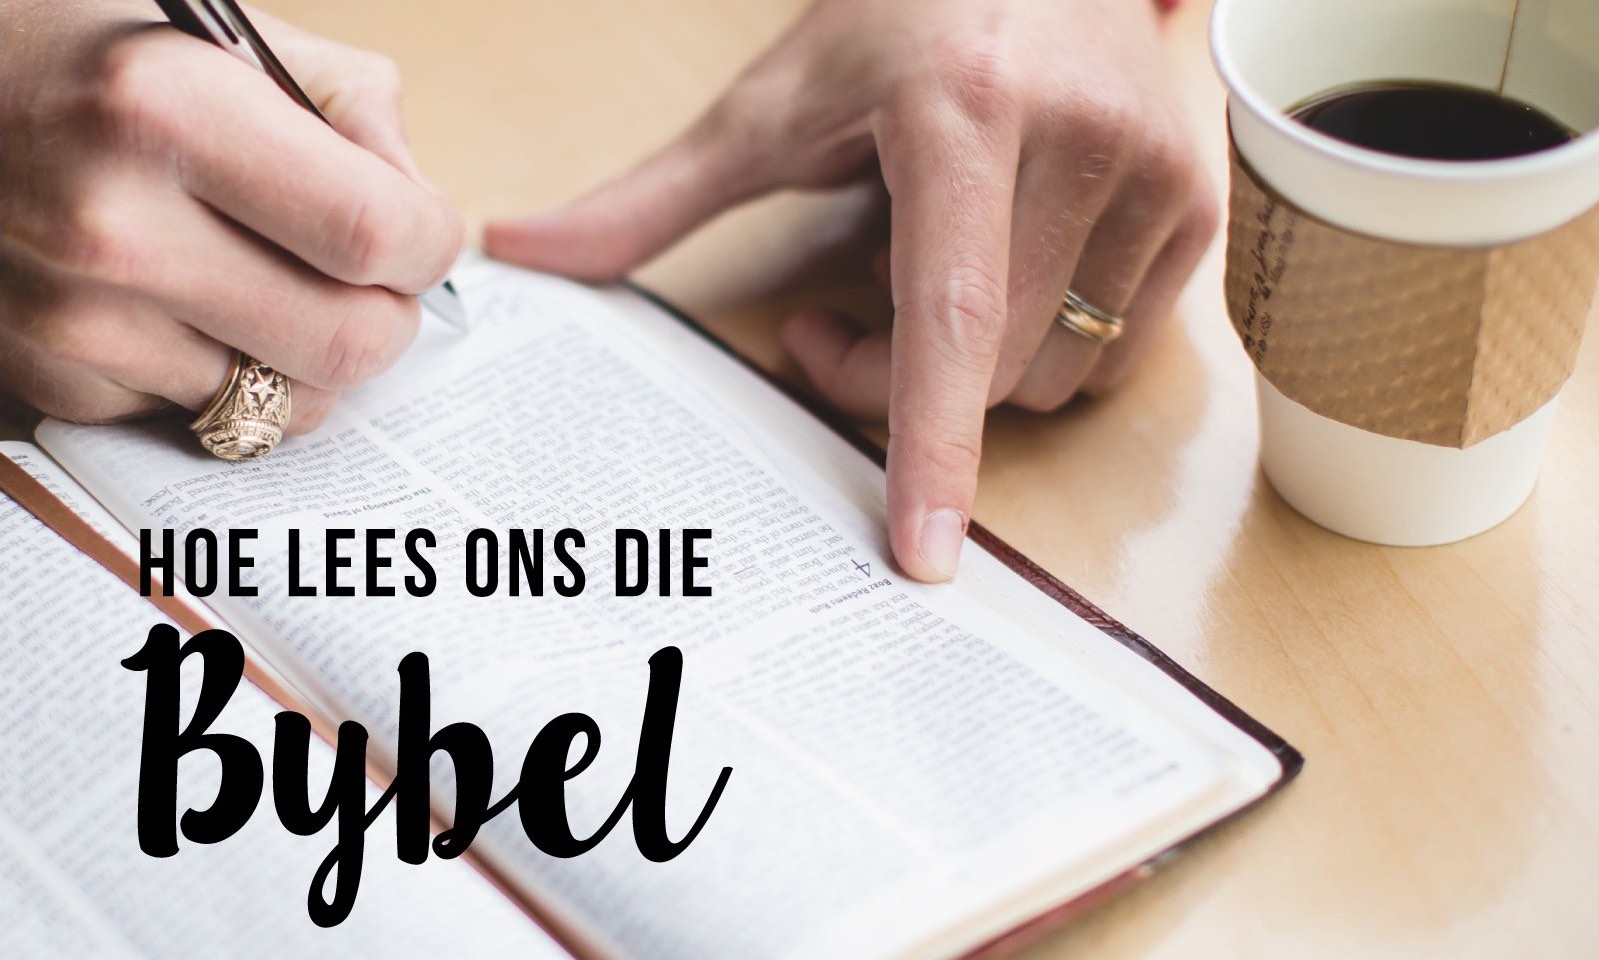 3. Hoe lees ons die Bybel?